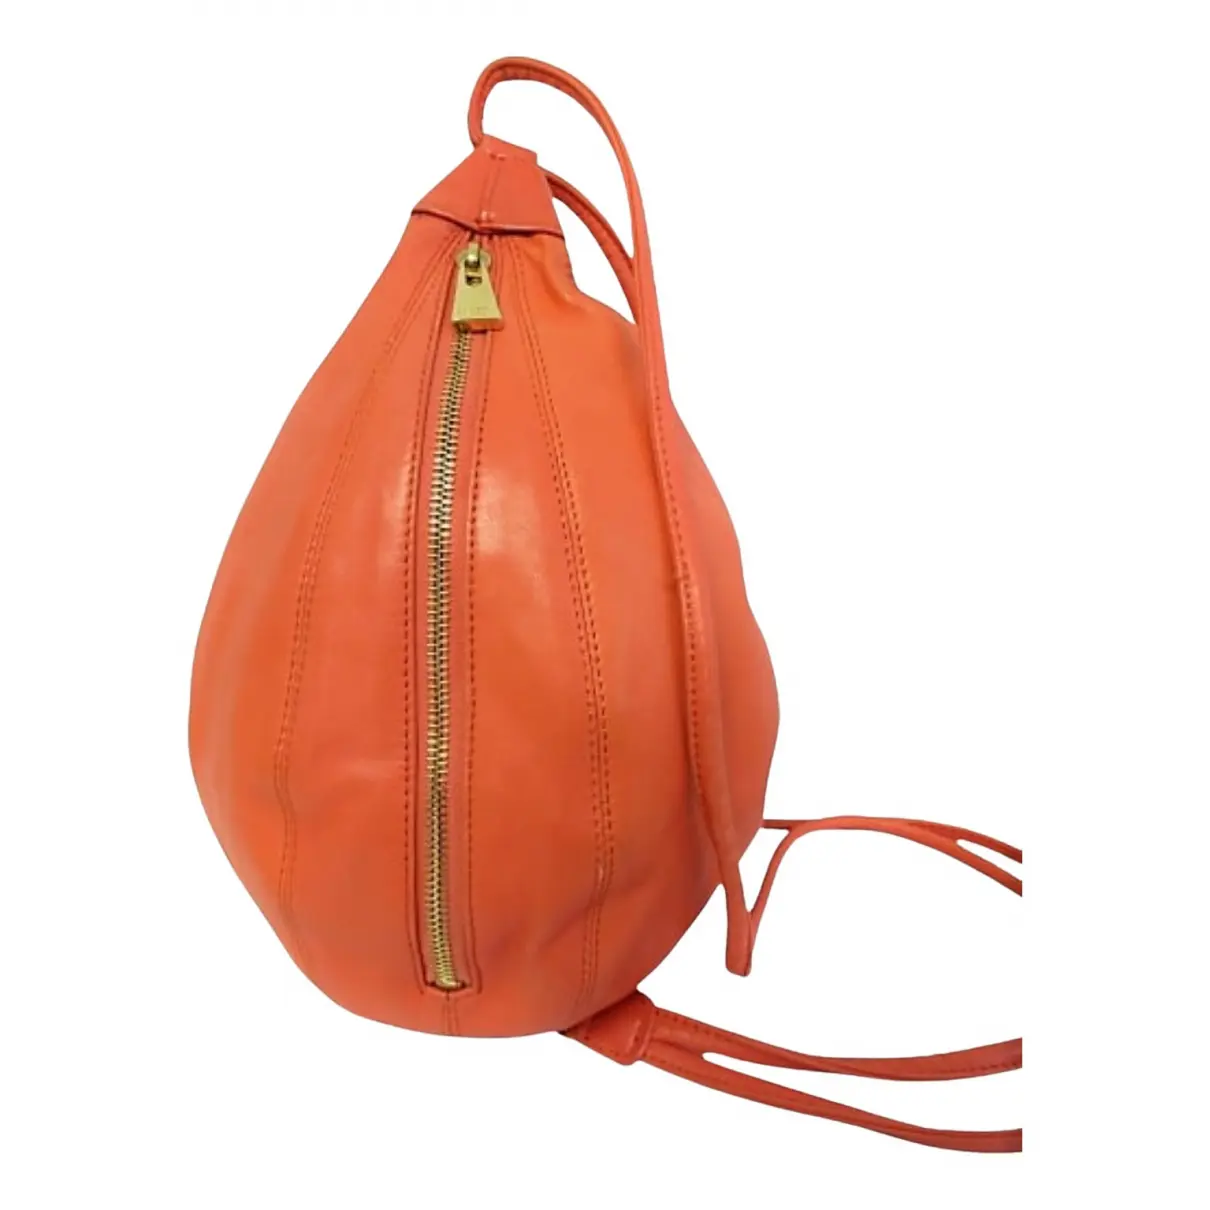 Leather backpack Celine - Vintage